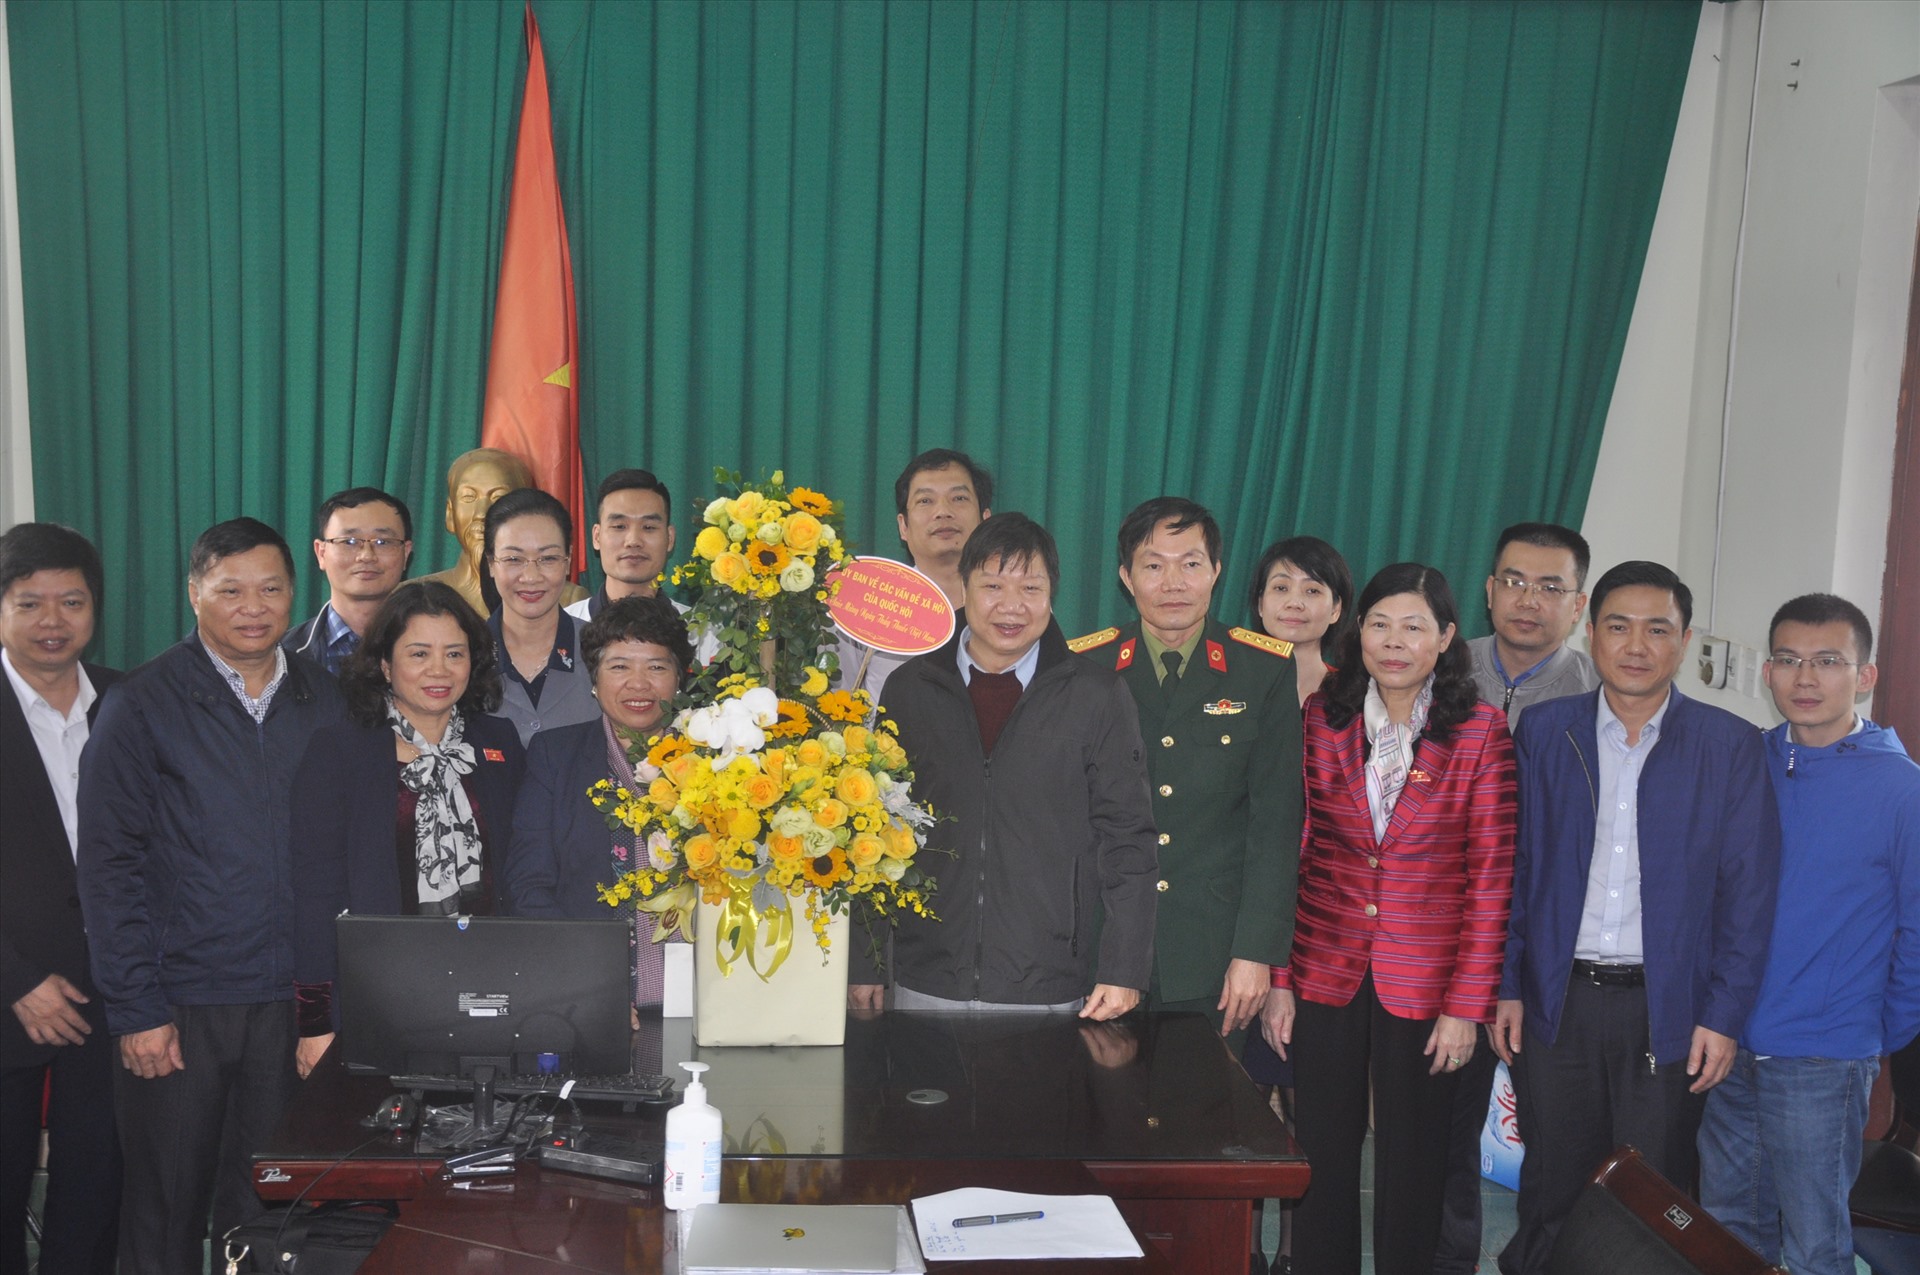 Đoàn công tác chúc mừng các nhân viên y tế đang trực tiếp phòng chống dịch COVID-19 tại huyện Bình Xuyên. Ảnh: Quế Chi